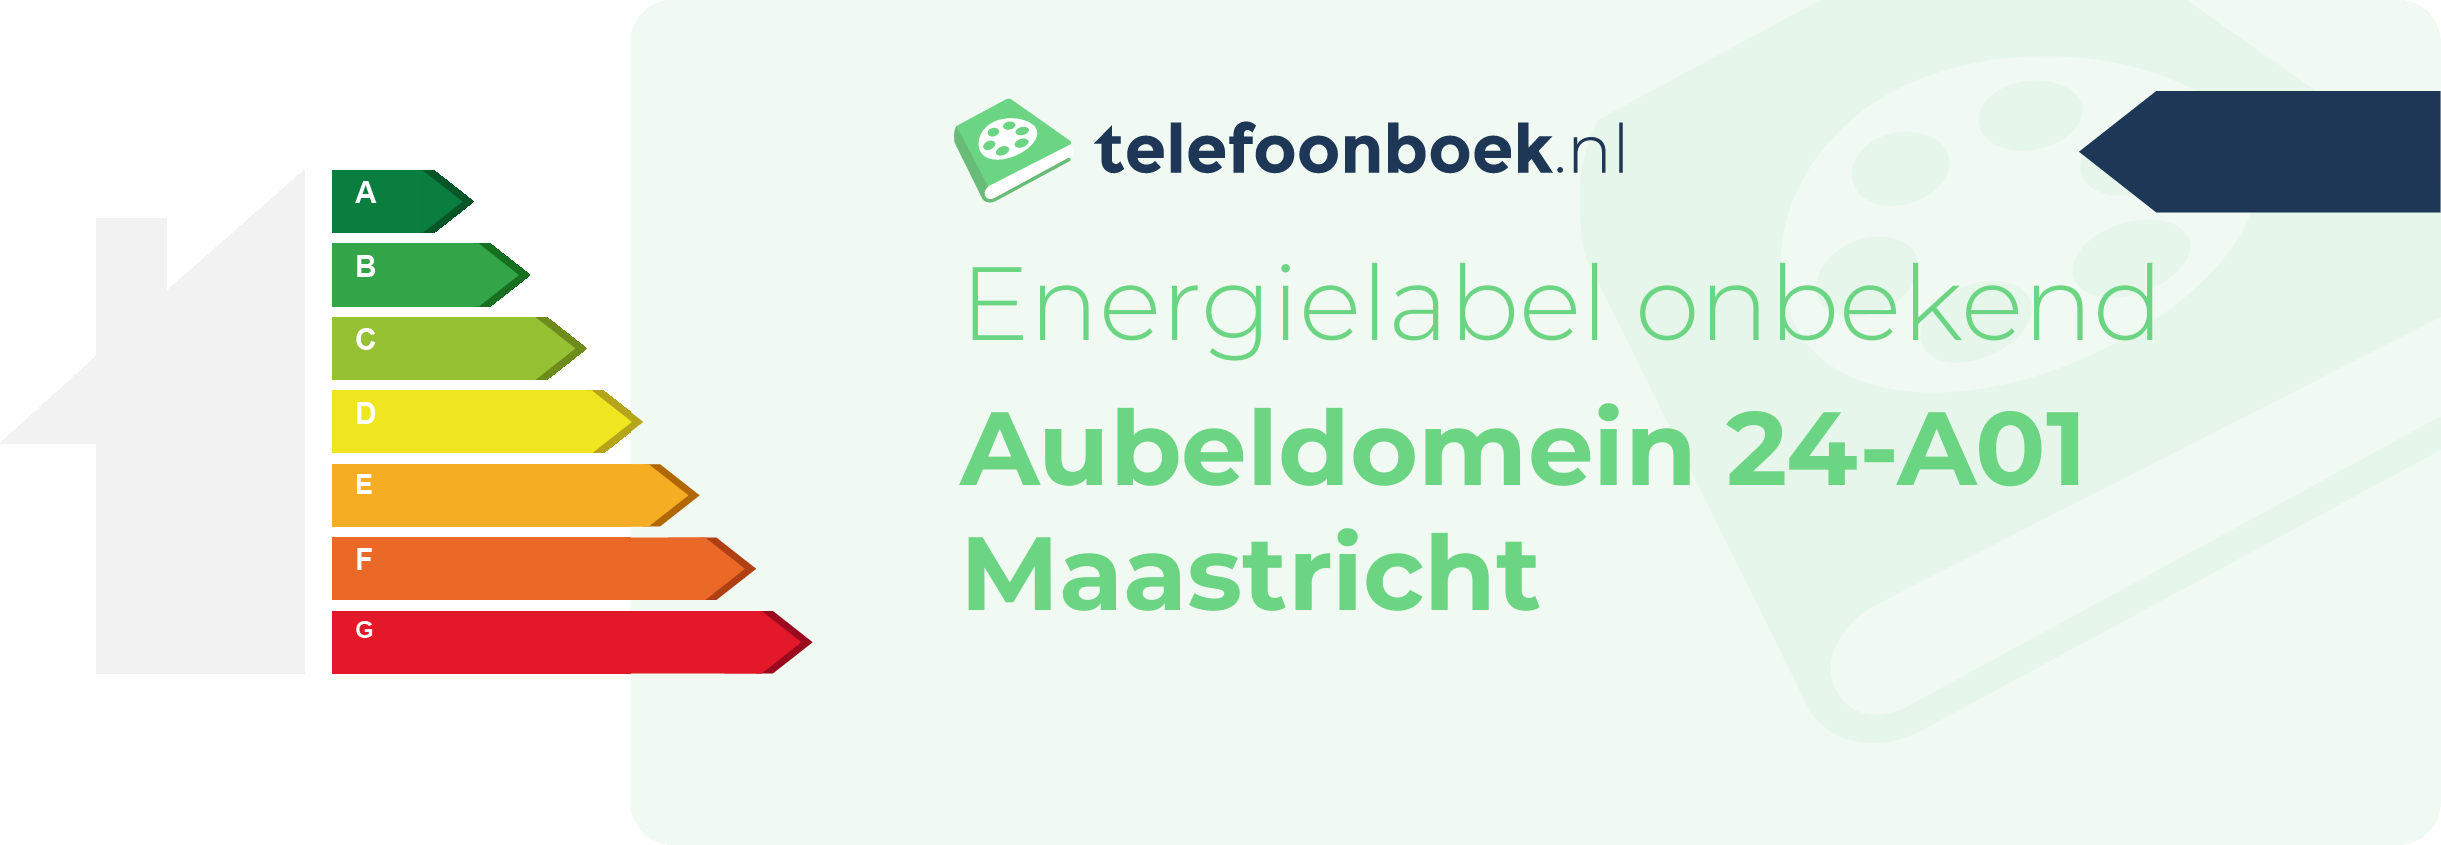 Energielabel Aubeldomein 24-A01 Maastricht